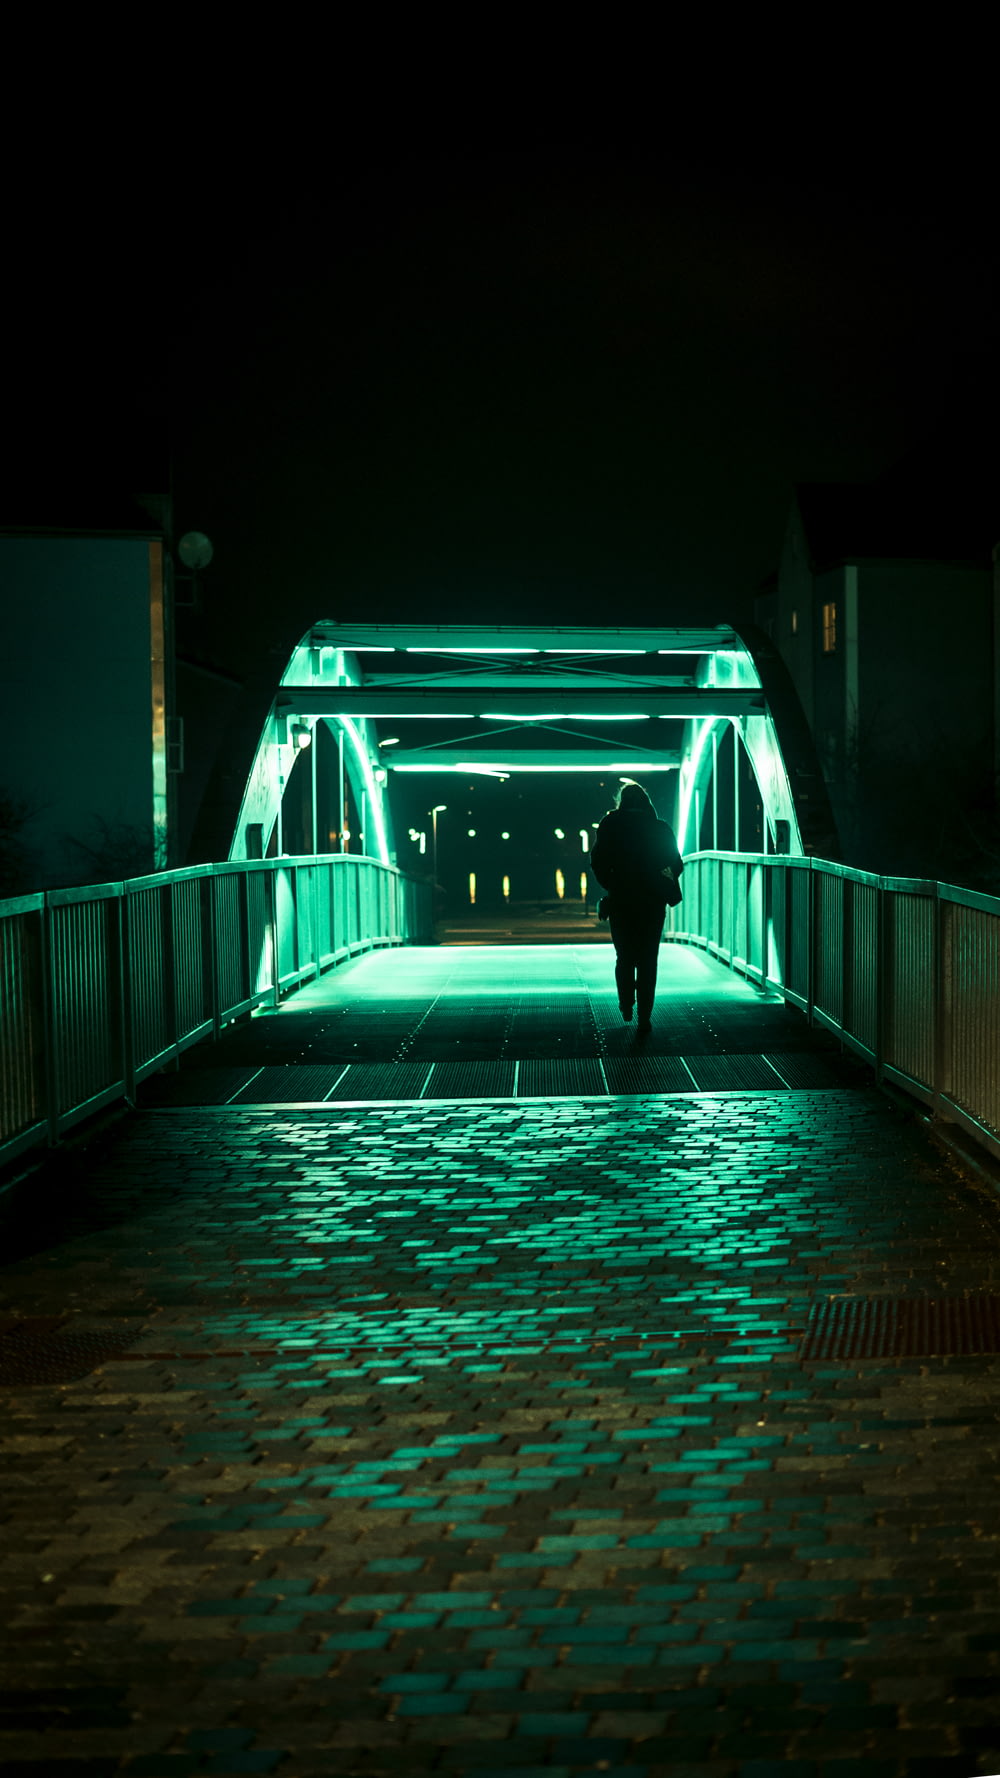 personne passant seule sur le pont pendant la nuit